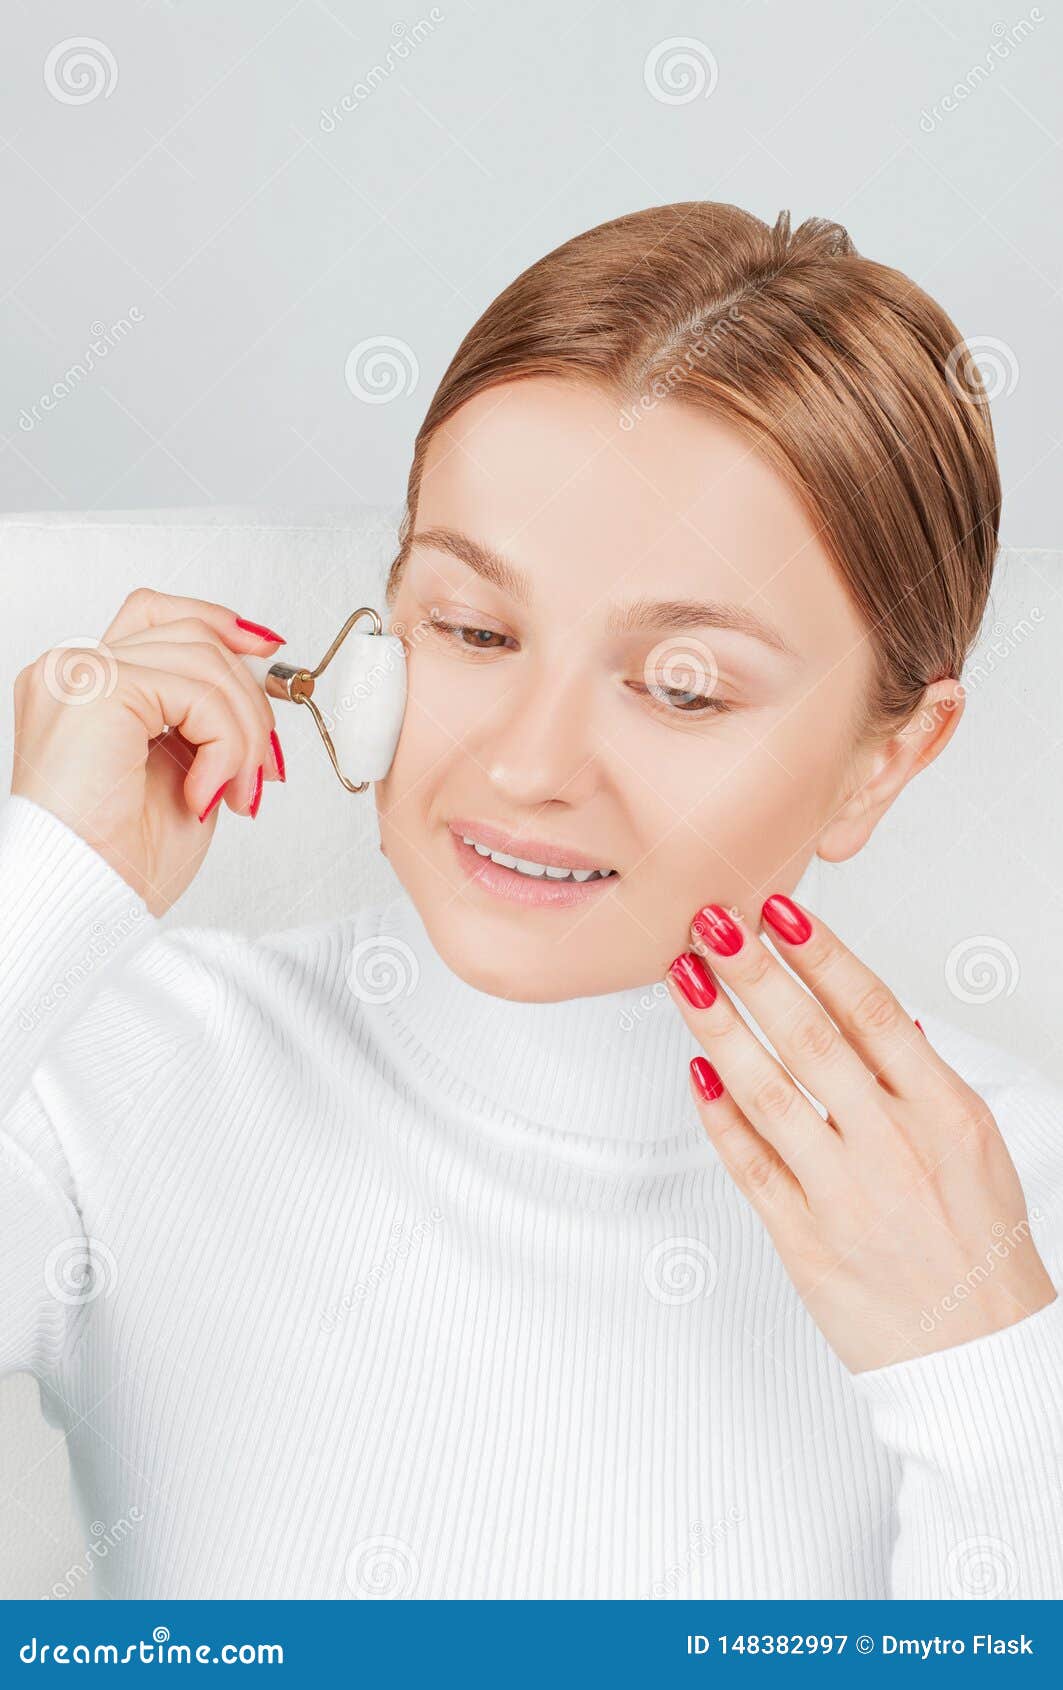 Face Massage Beautiful Woman Getting Massage Cheek Using Roller Massage Stock Image Image Of